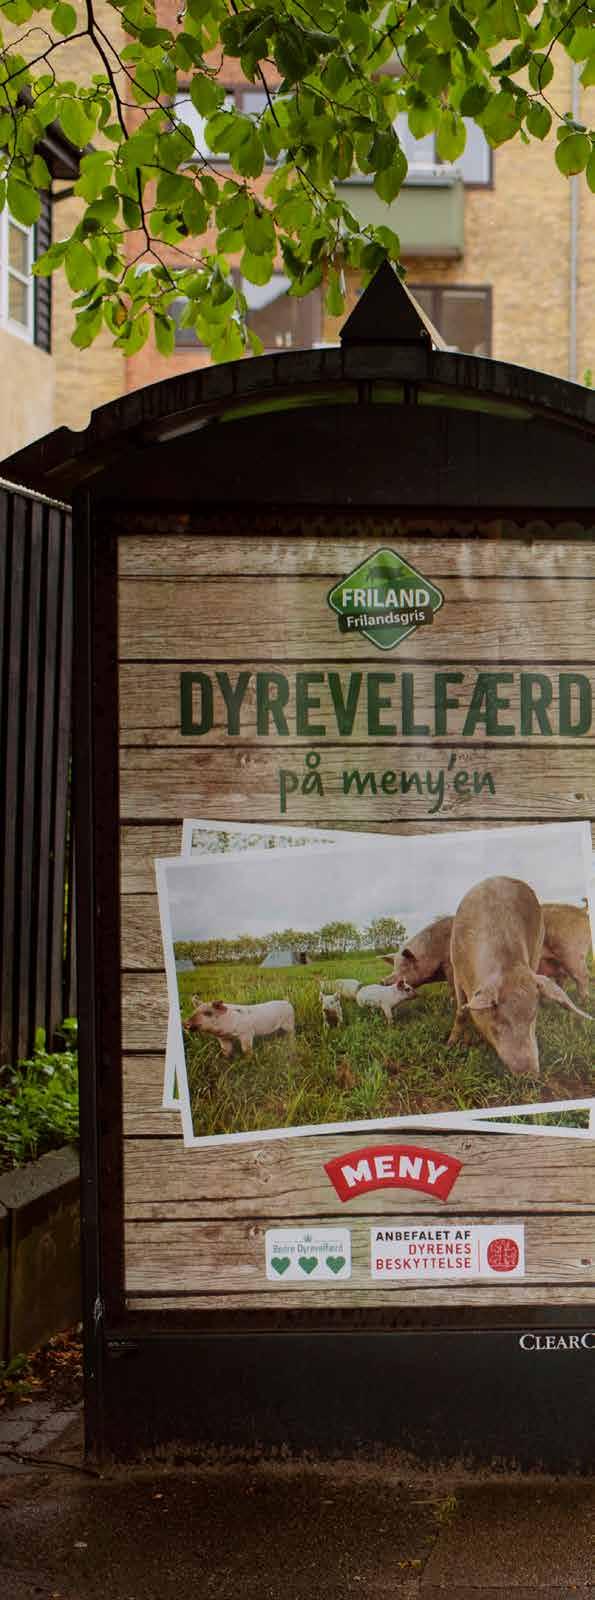 Friland sætter dyrevelfærd på MENY en I september samarbejdede Friland og MENY-kæden igen om at stille skarpt på FRILANDSGRIS for at gøre opmærksom på den gode dyrevelfærd, der kendetegner konceptet.